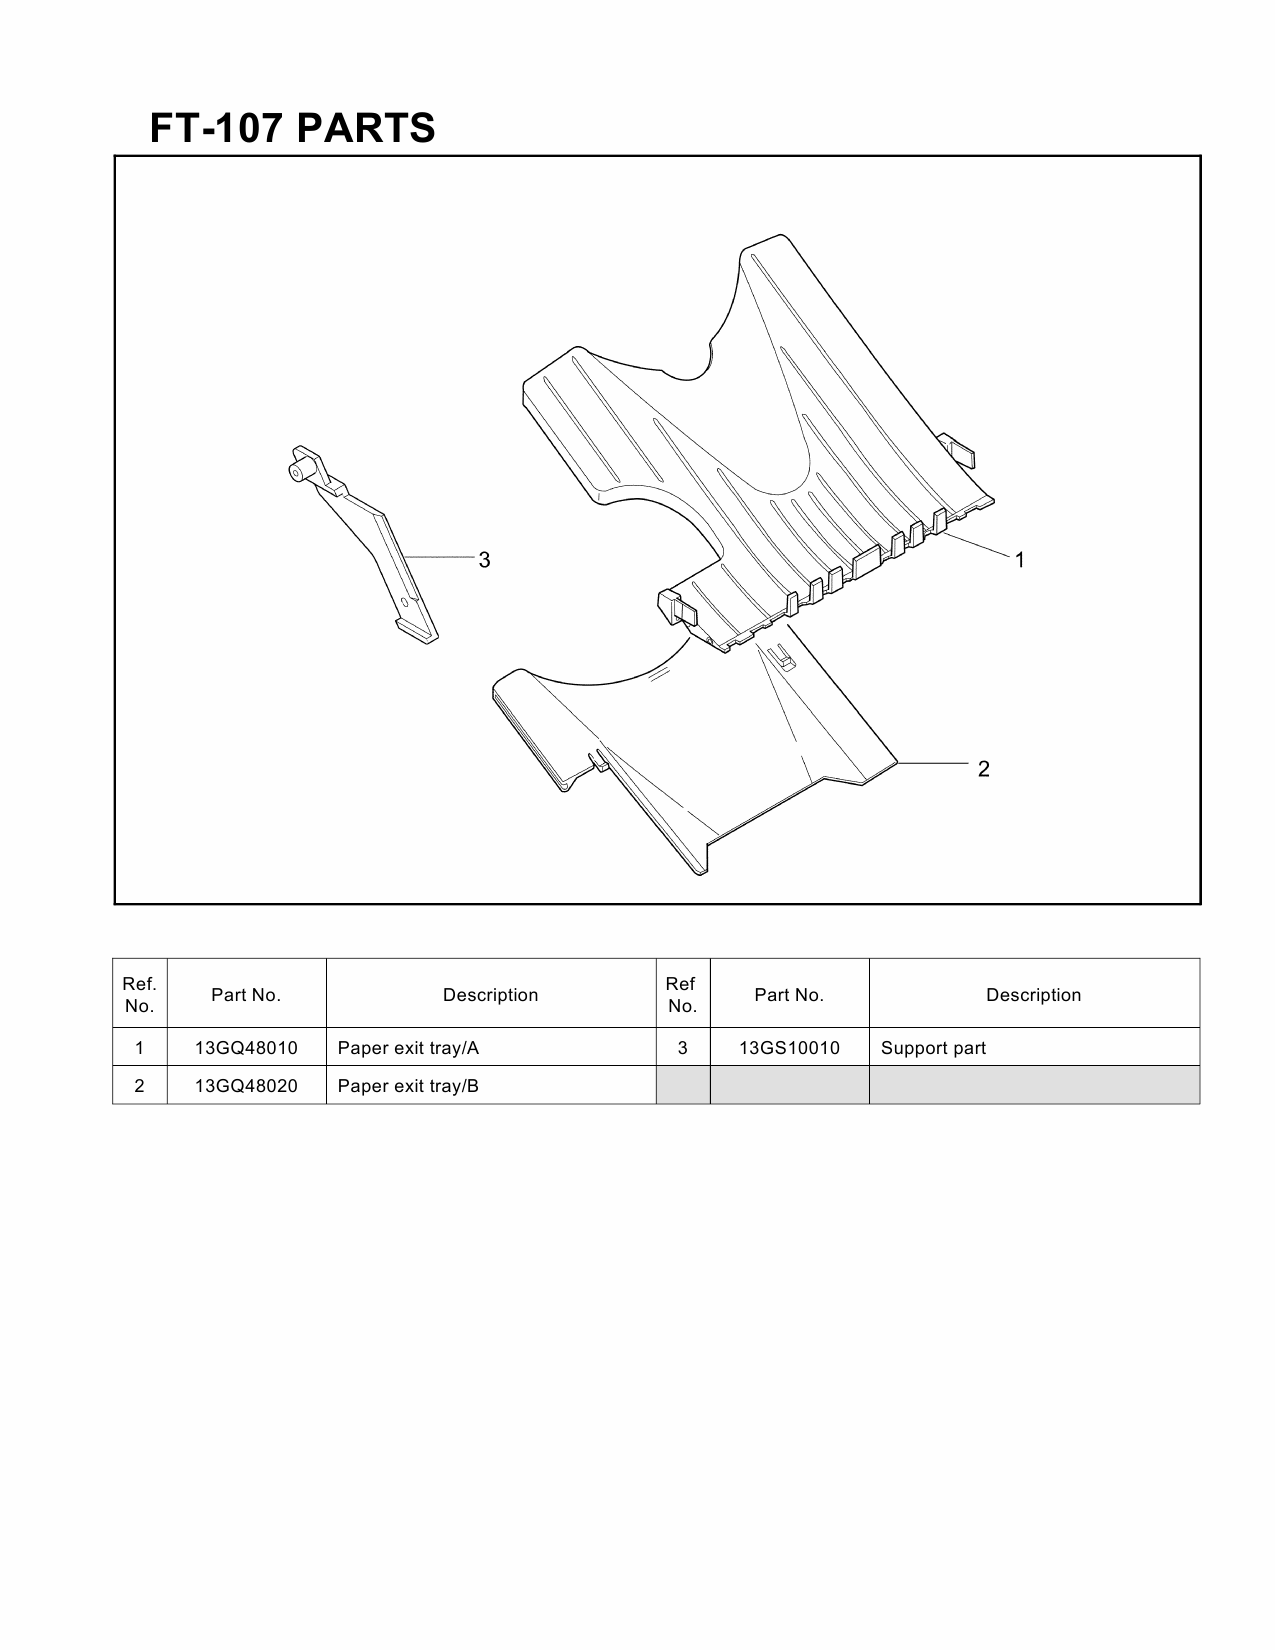 Konica-Minolta Options FT-107 Parts Manual-3